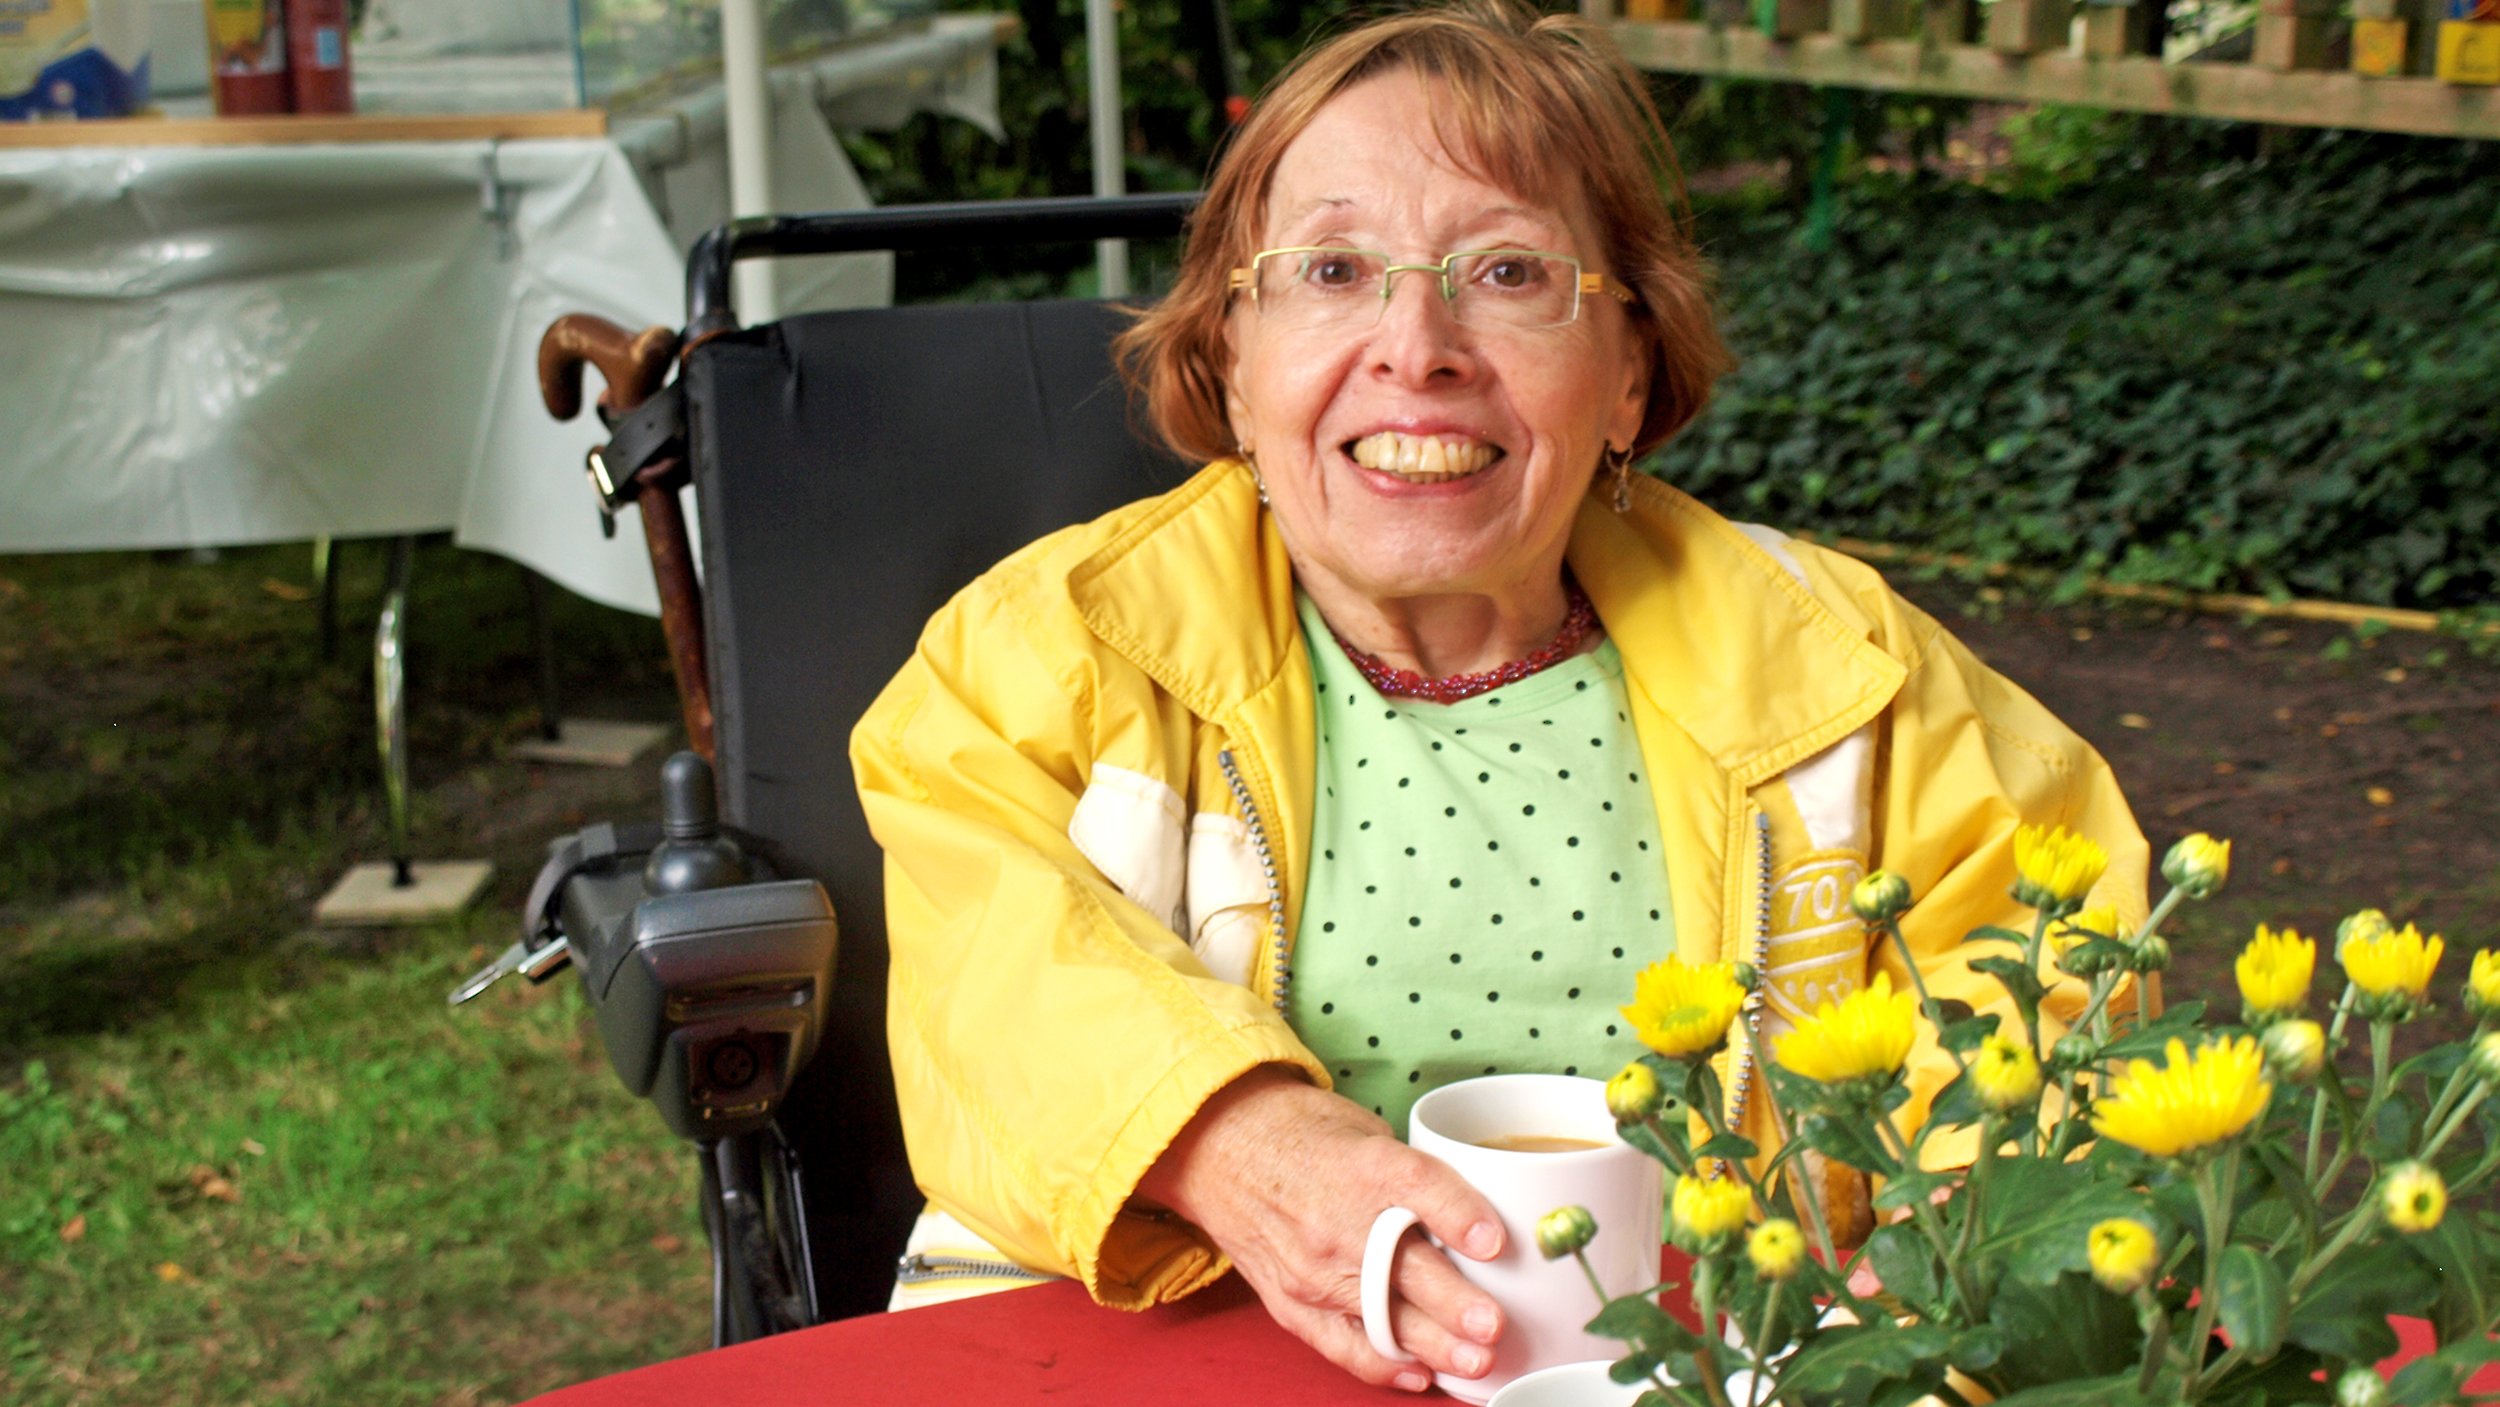 Foto: Ingrid Koch in gelber Windjacke mit ihrem E-Rollstuhl im Garten sitzend, vor ihr ein Kaffeebecher und ein gelber Strauß Blumen